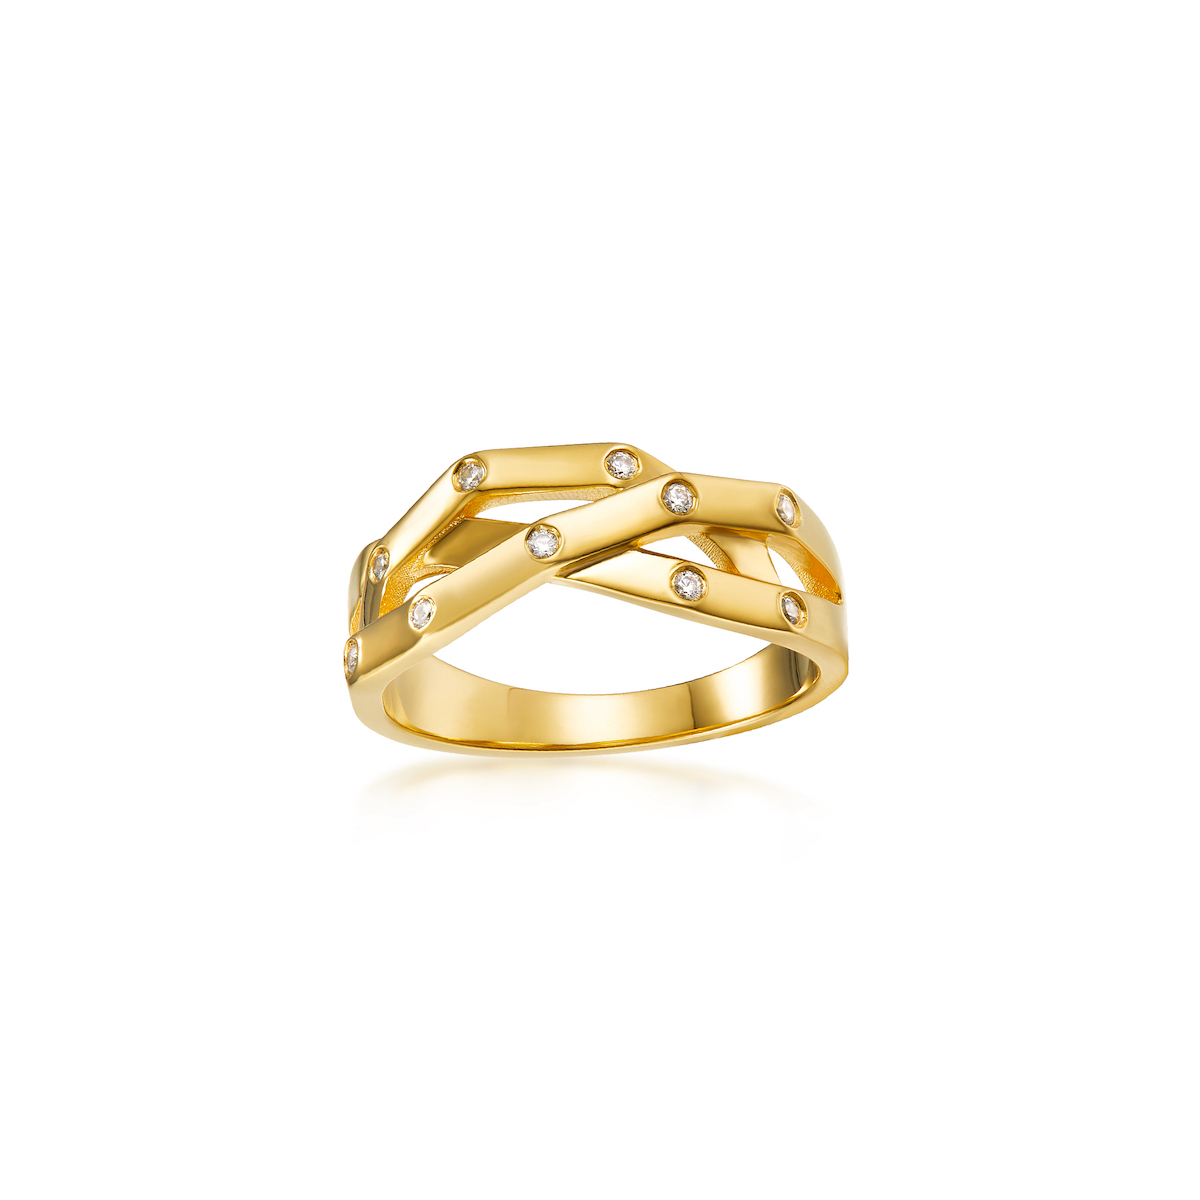 Ring Fashionable Versatile Temperament Design For Female